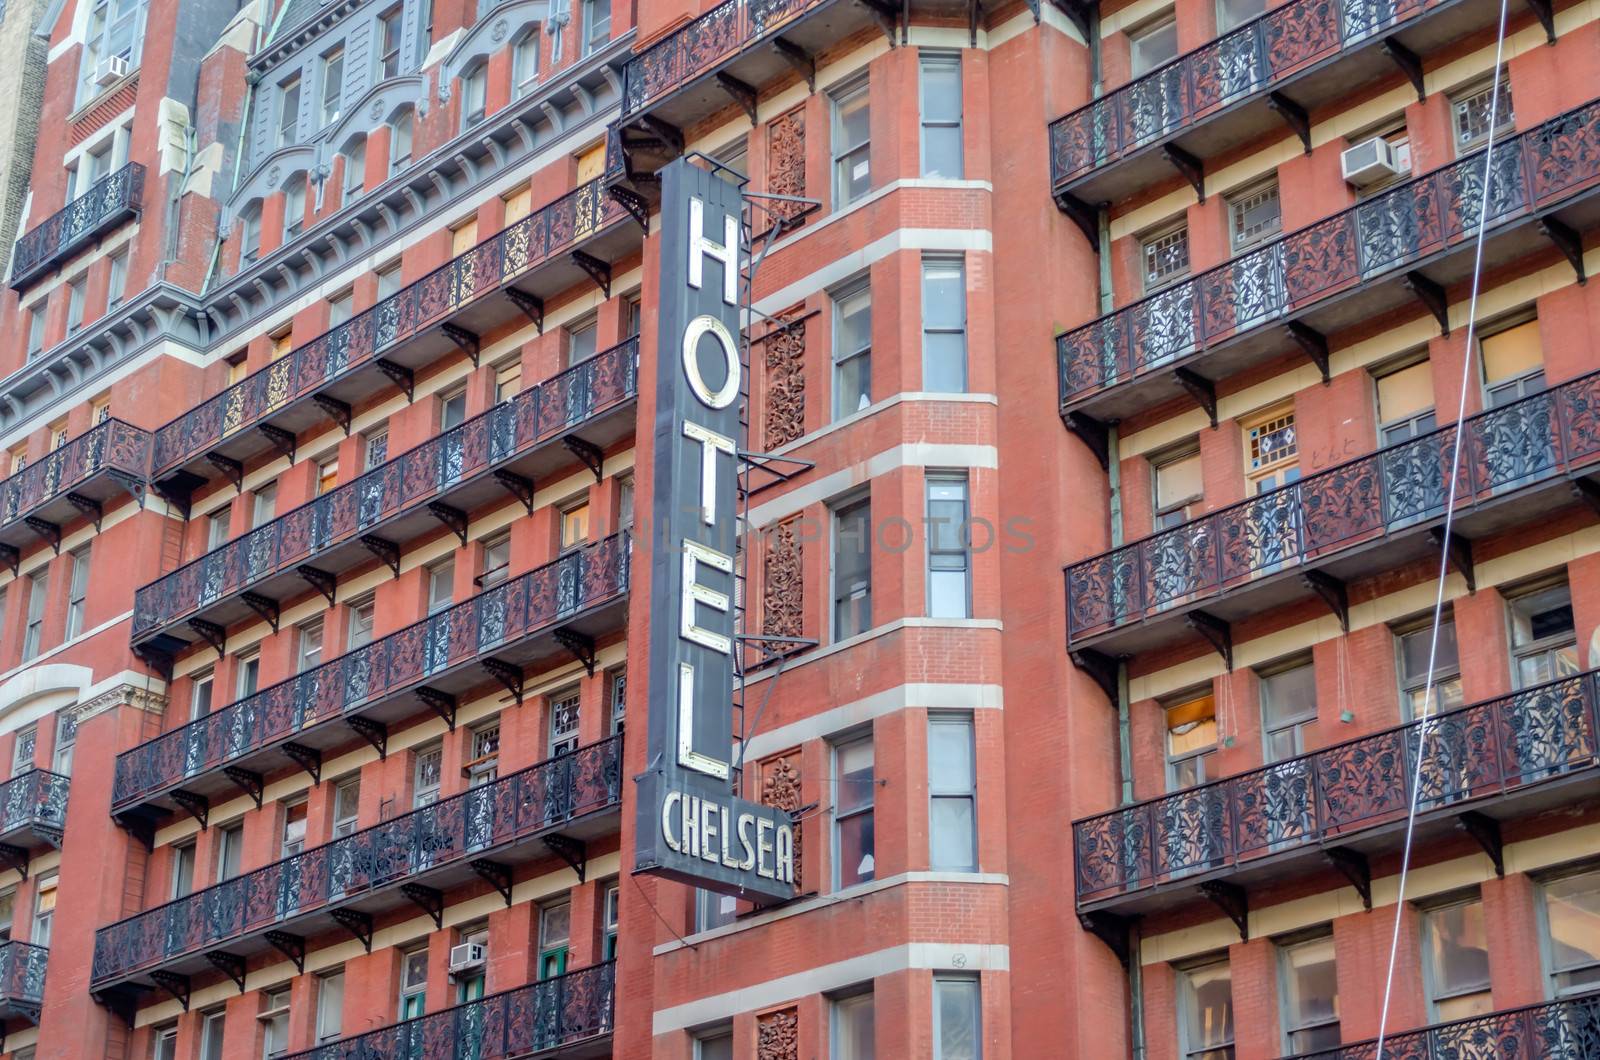 Hotel Chelsea, New York City by marcorubino